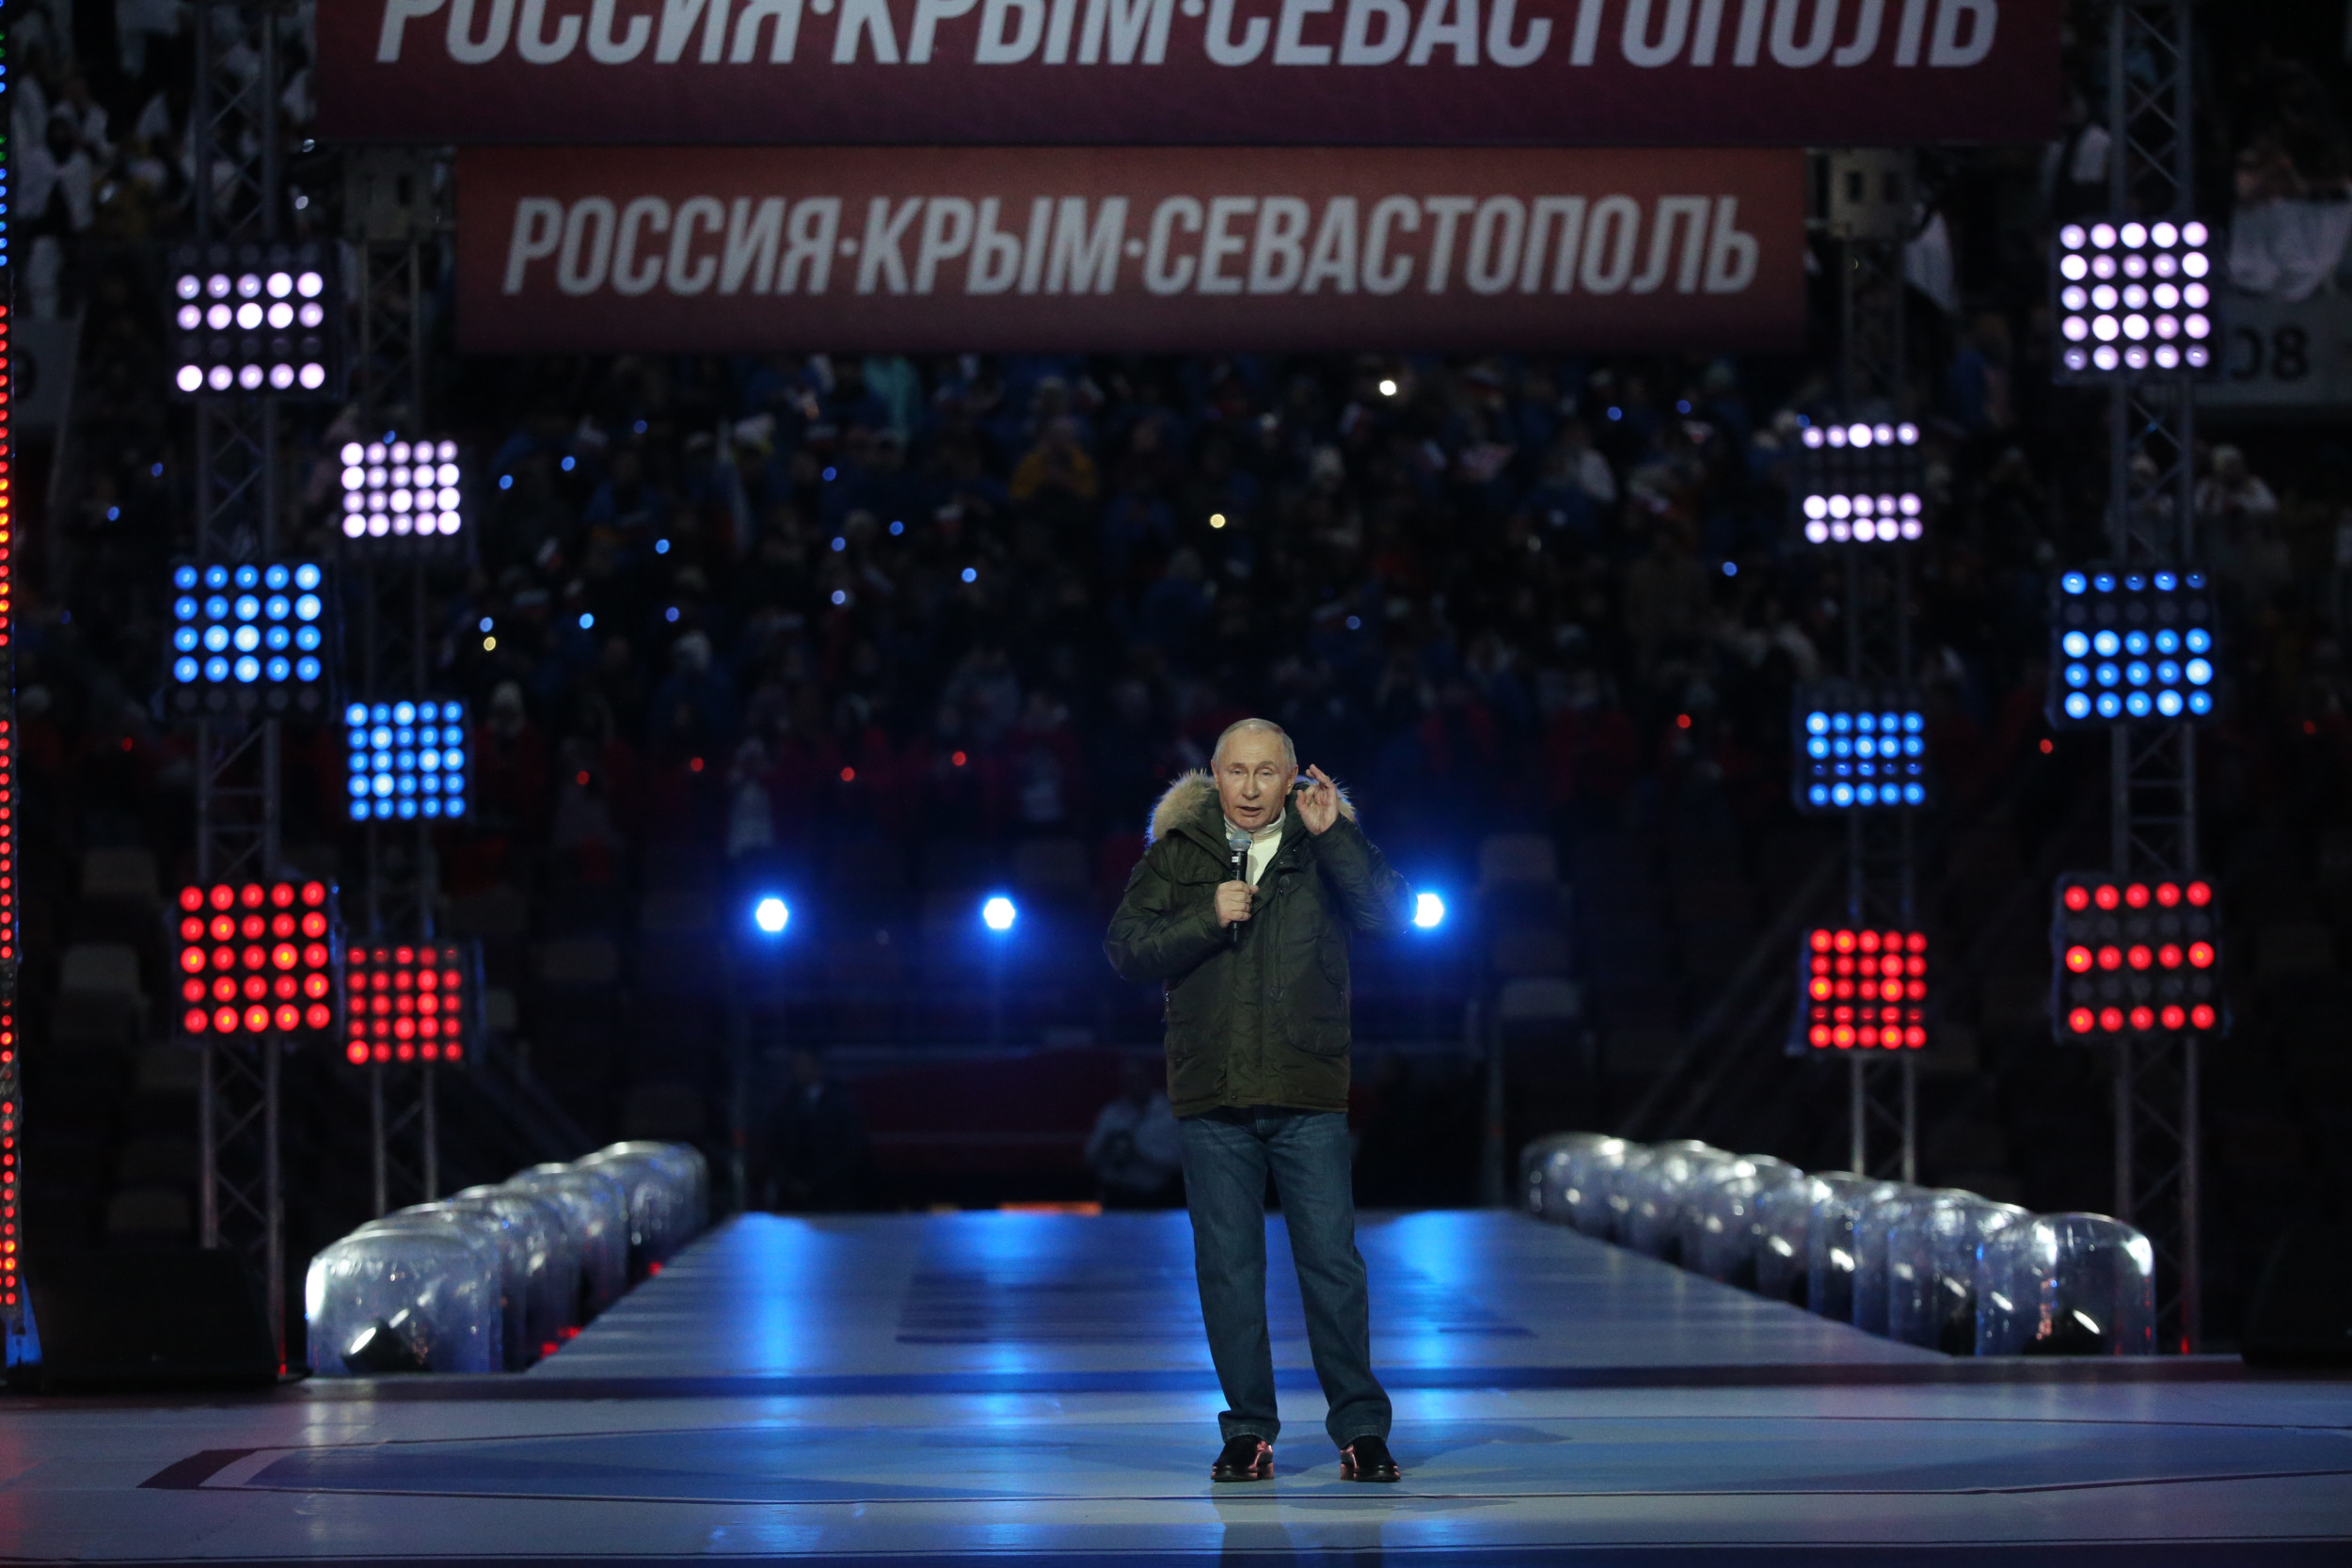 Концерт в москве посвященный крыму